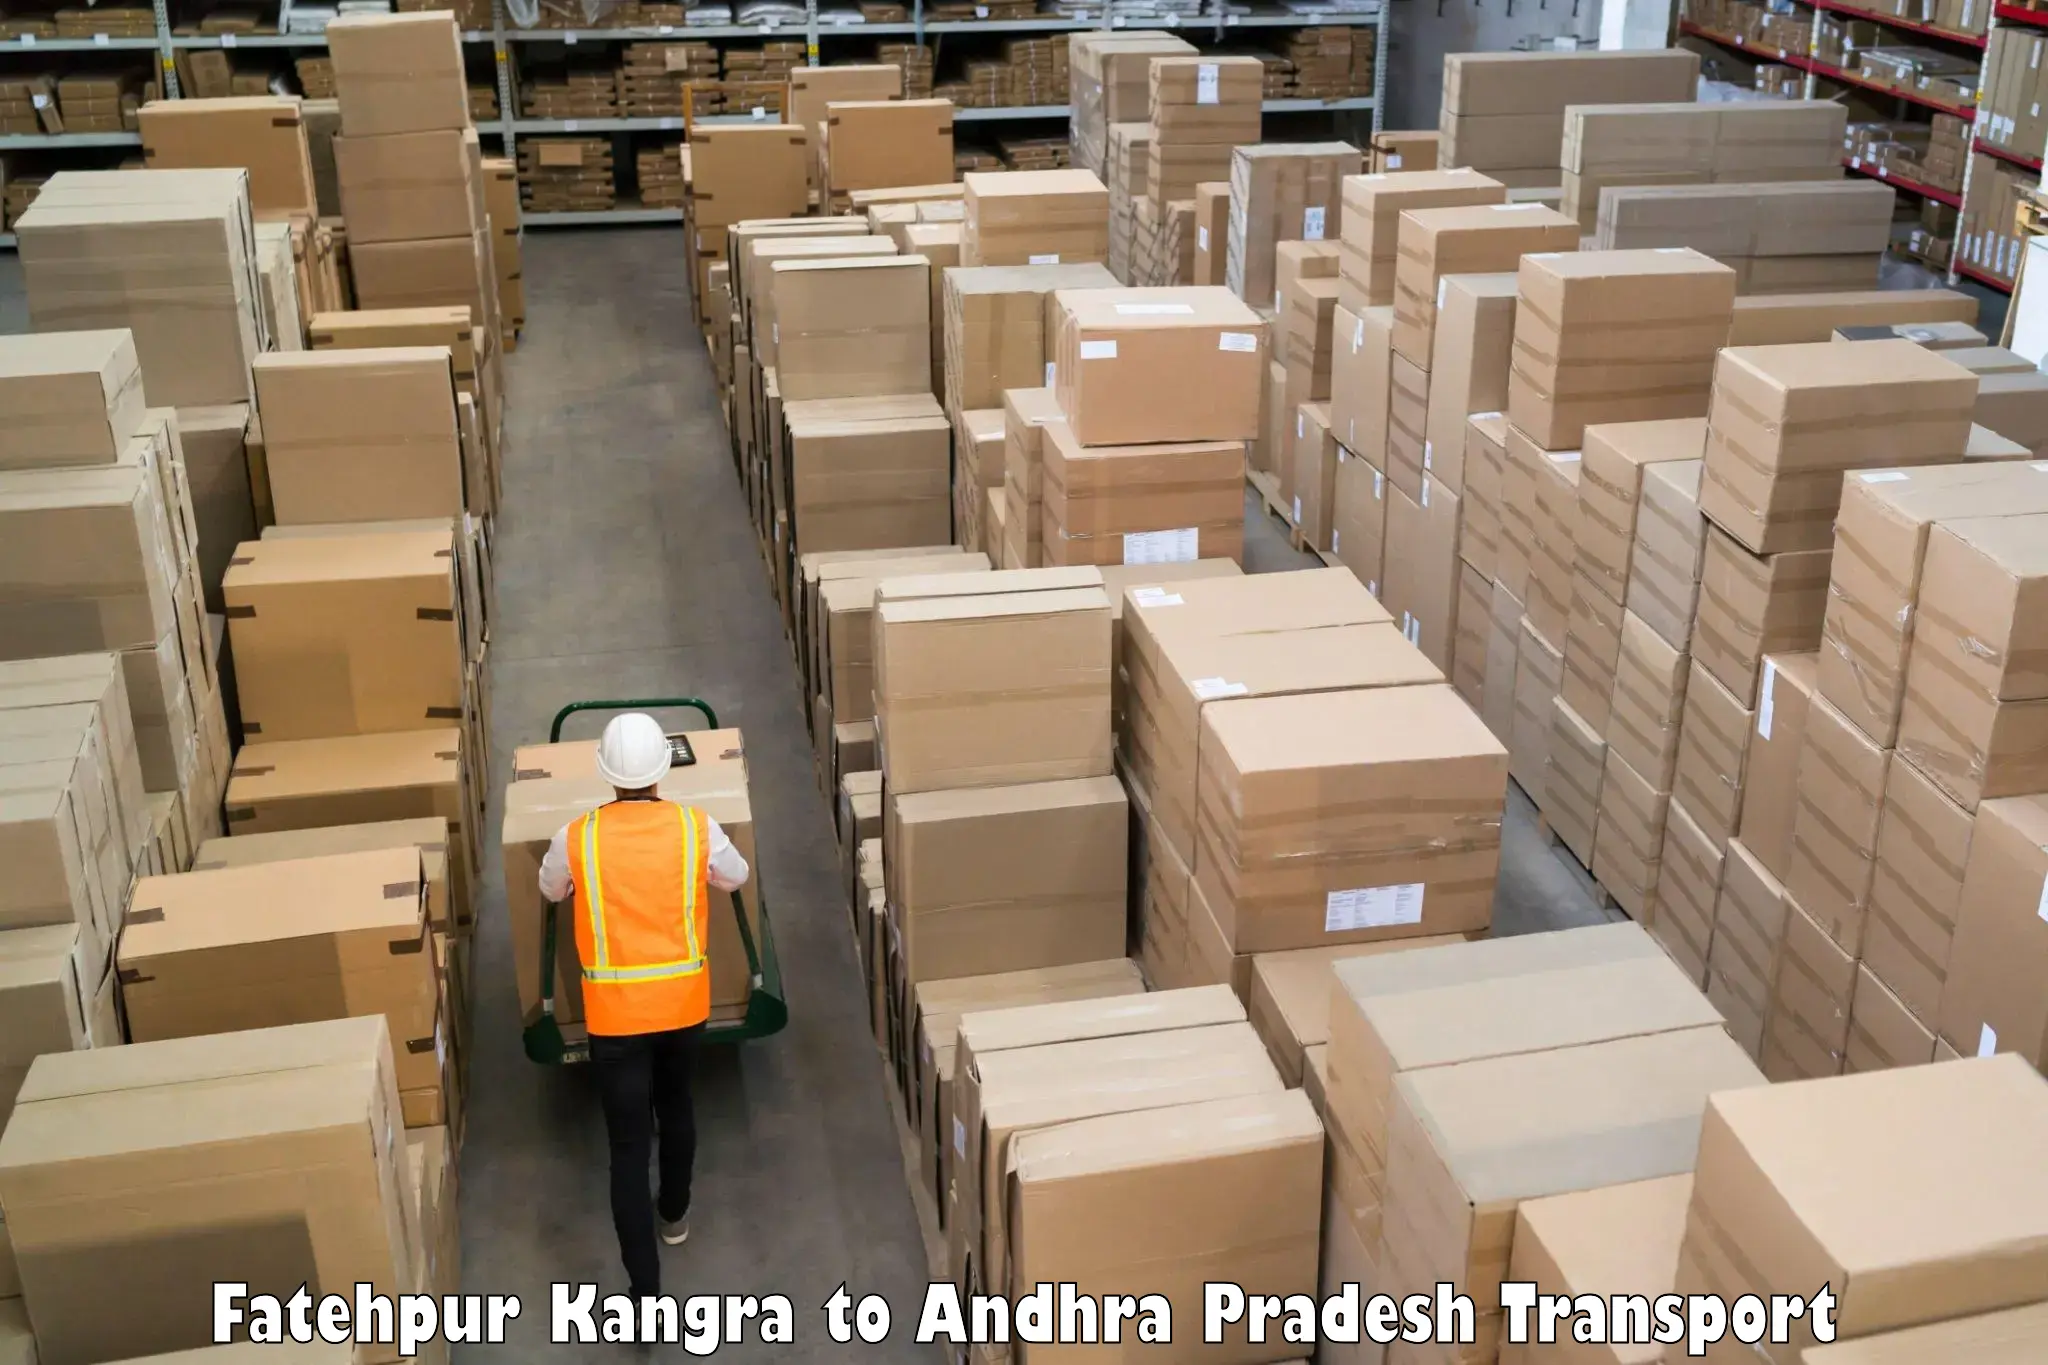 Shipping partner Fatehpur Kangra to Mangalagiri